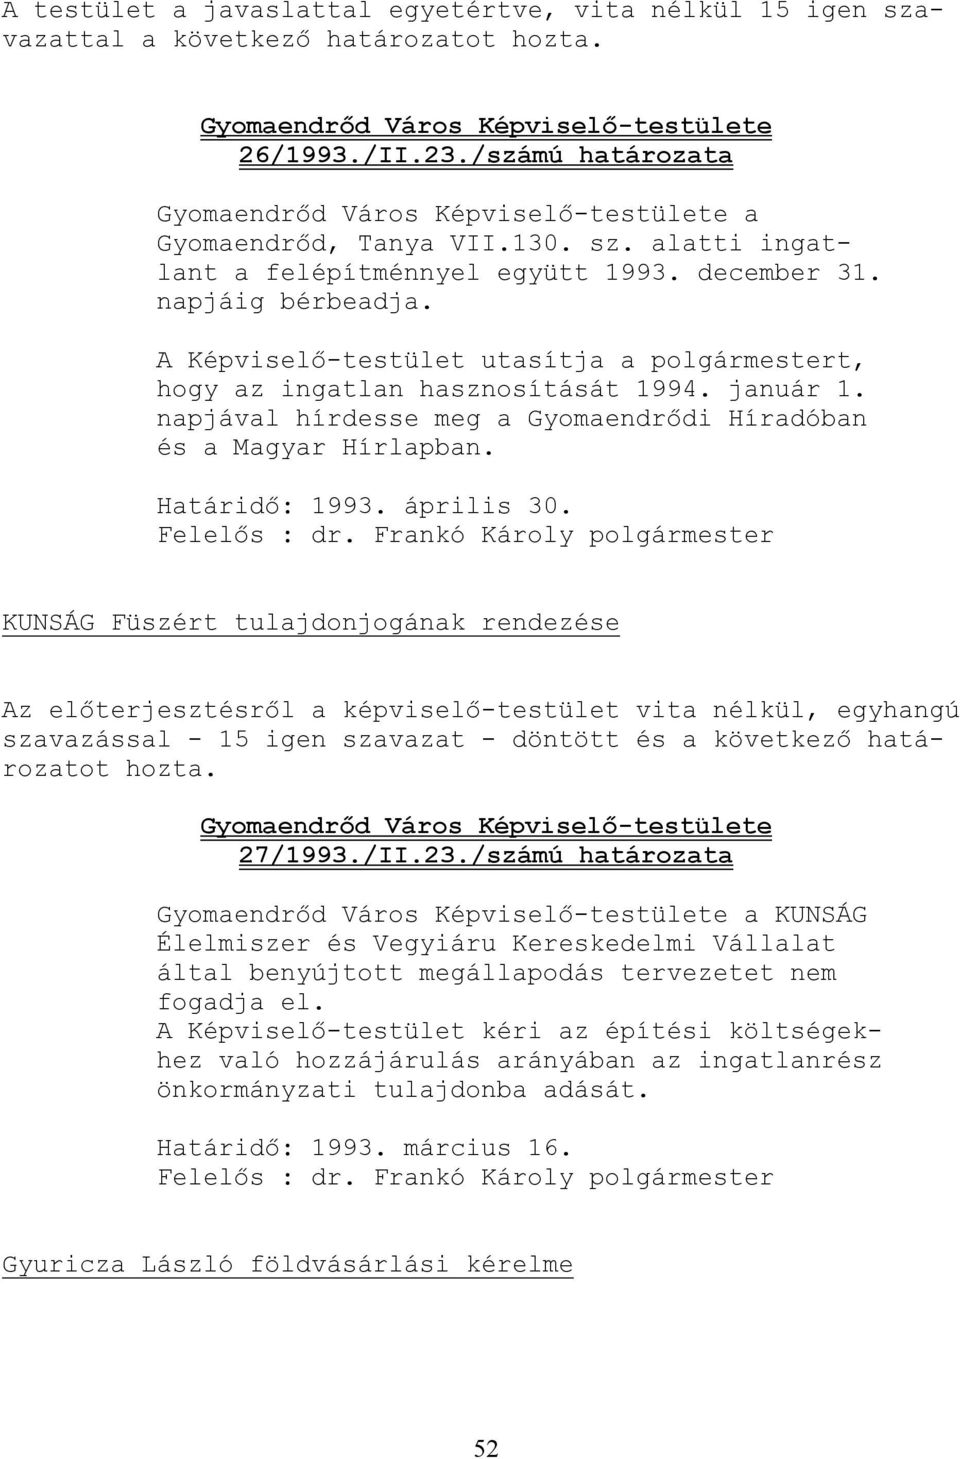 A Képviselı-testület utasítja a polgármestert, hogy az ingatlan hasznosítását 1994. január 1. napjával hírdesse meg a Gyomaendrıdi Híradóban és a Magyar Hírlapban. Határidı: 1993. április 30.